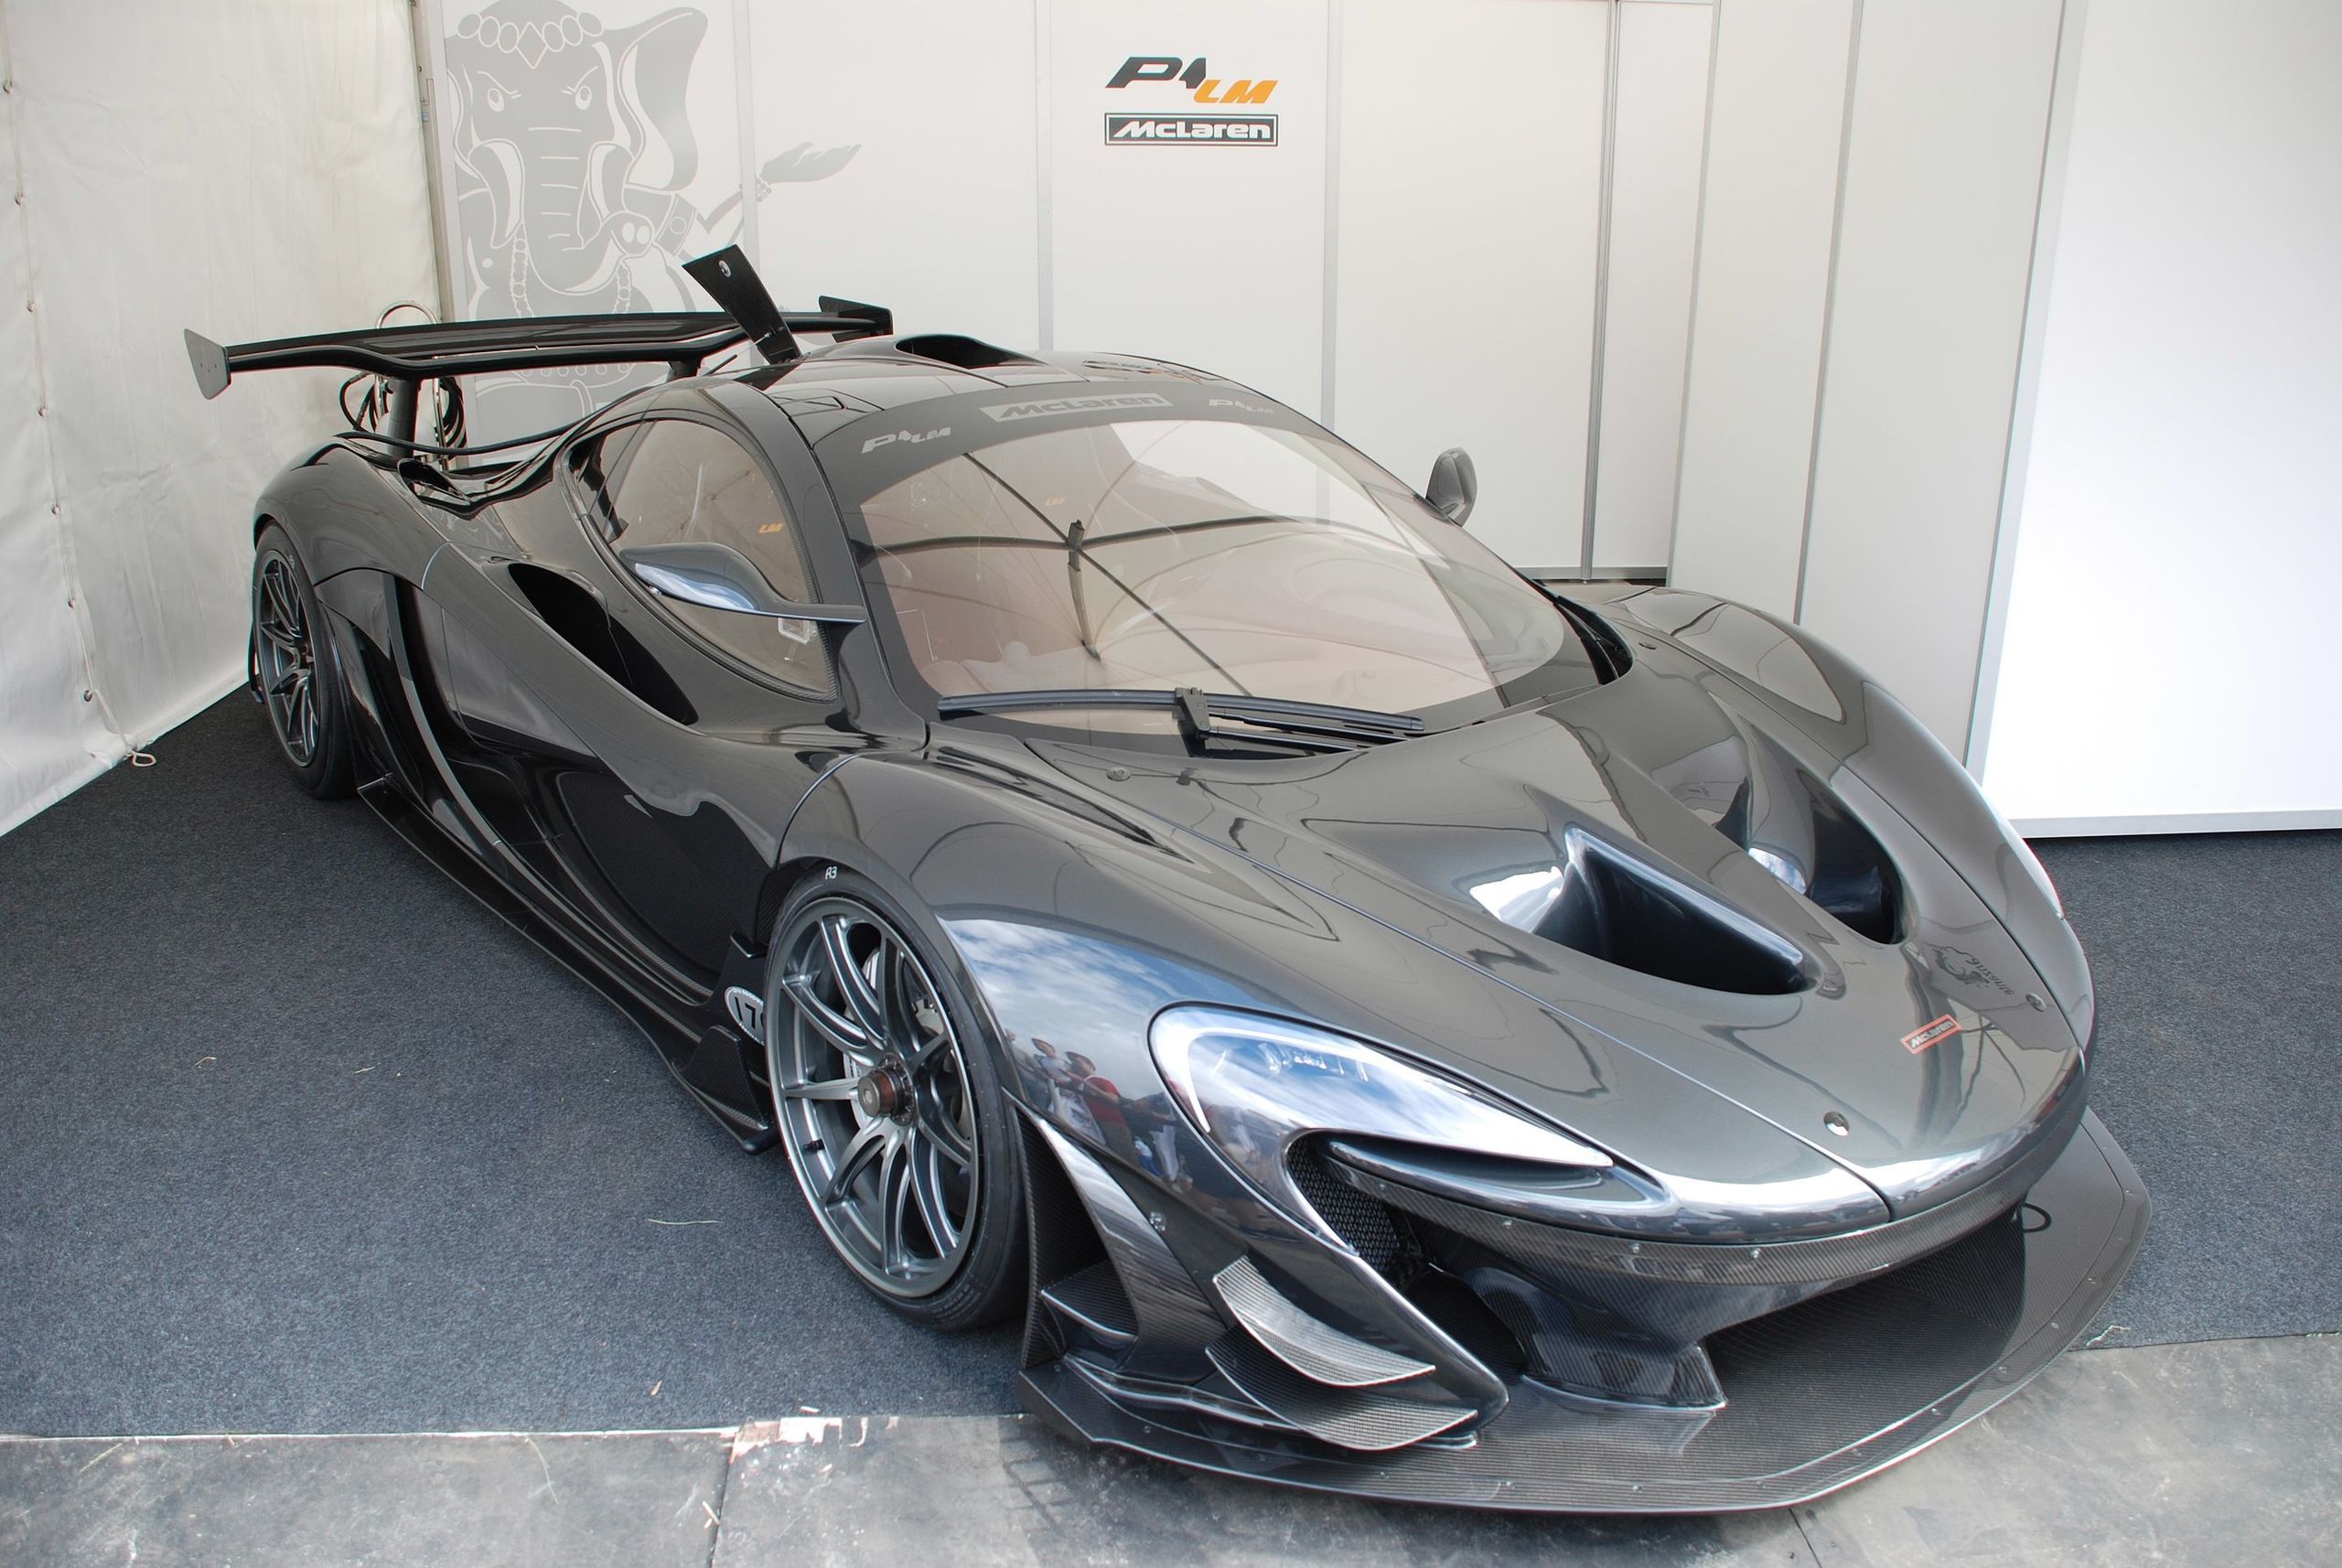 A Black McLaren P1 LM